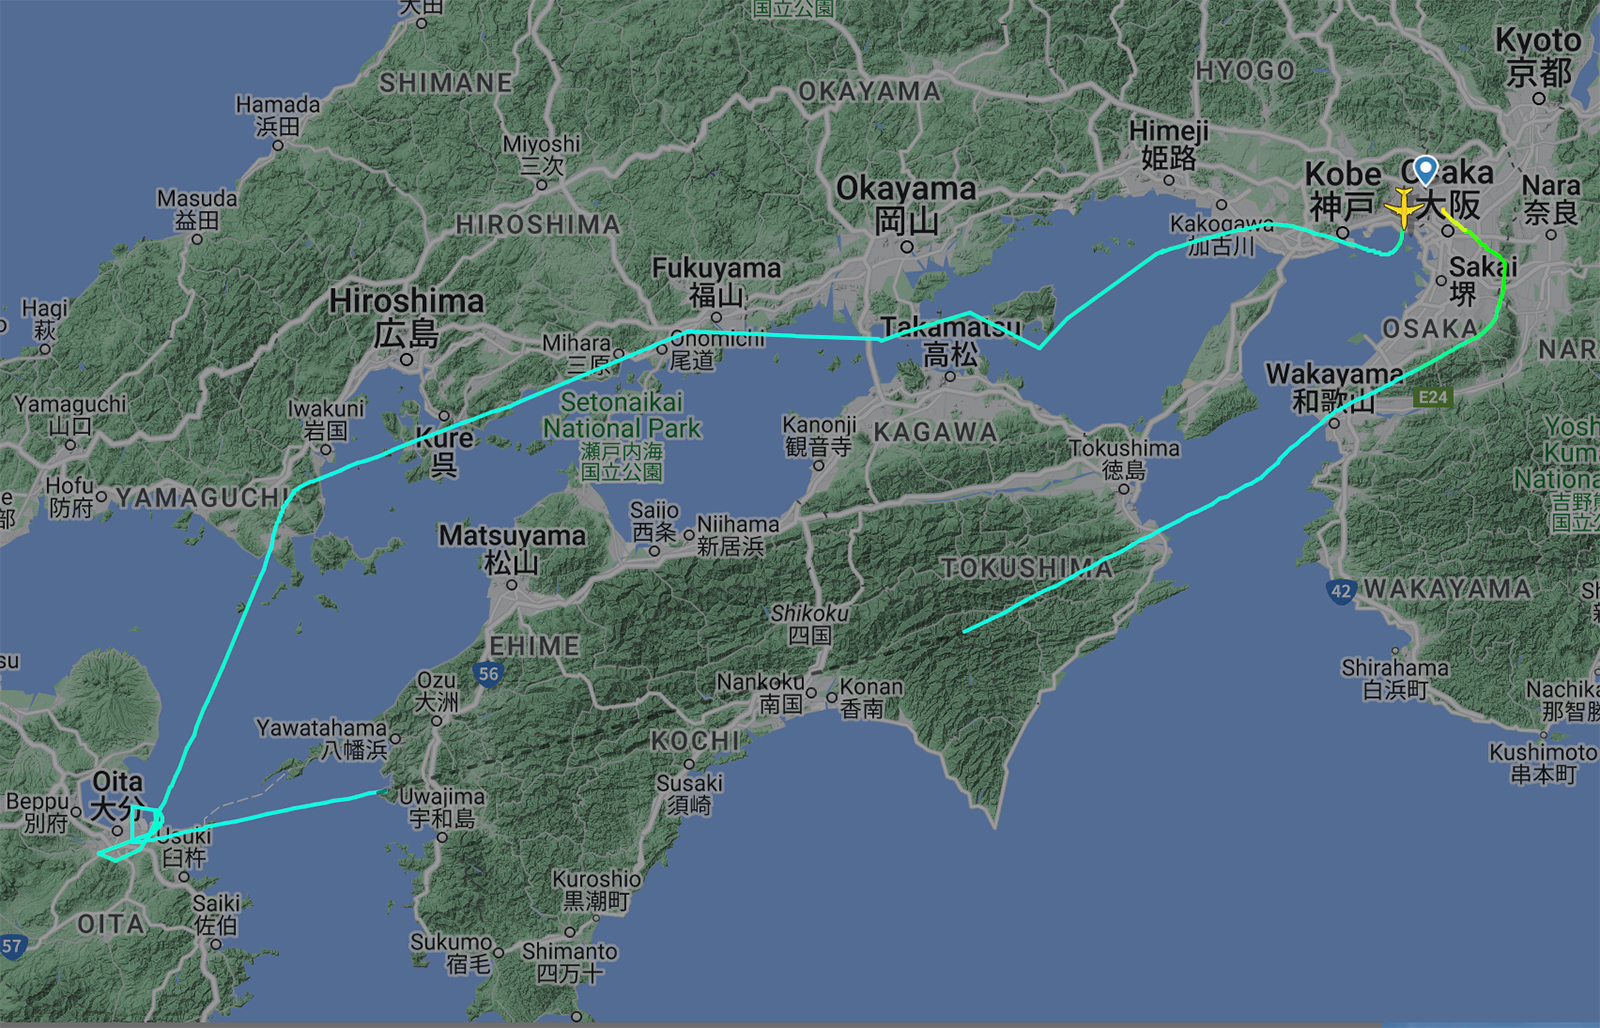 周遊チャーターの飛行ルート。往路は瀬戸内海を飛行し、大分上空で旋回。復路は四国上空を縦断した。